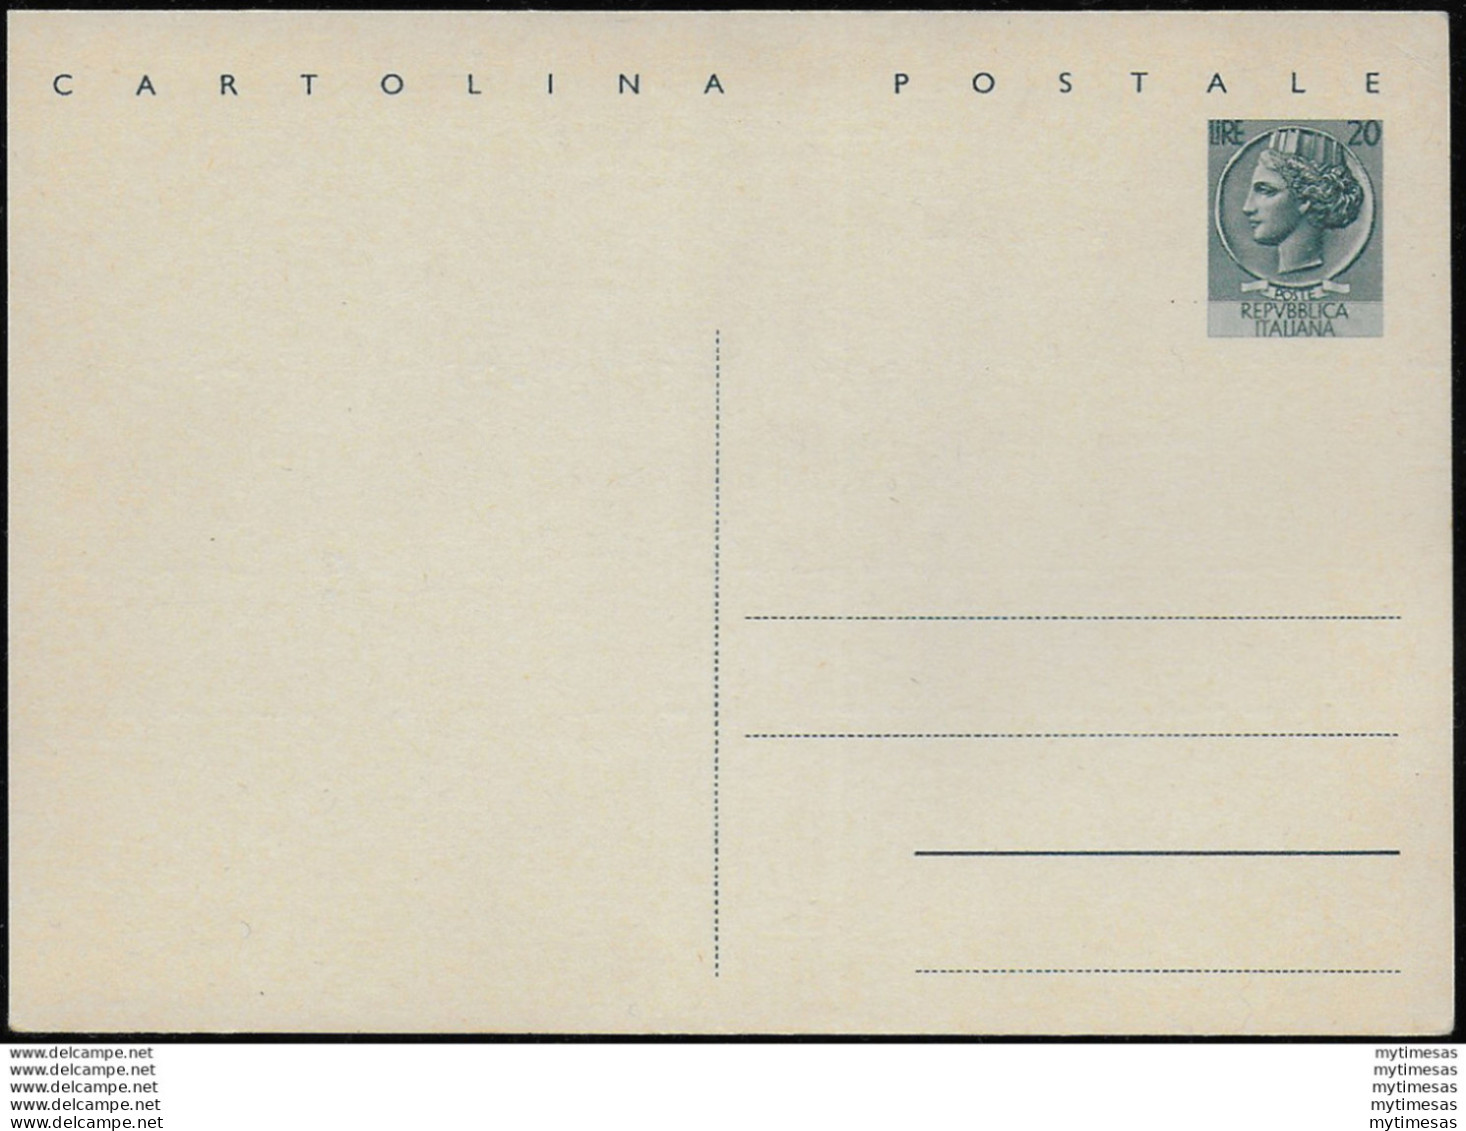 1954 Italia C154 Lire 20 Cartolina Postale Fil. - Stamped Stationery